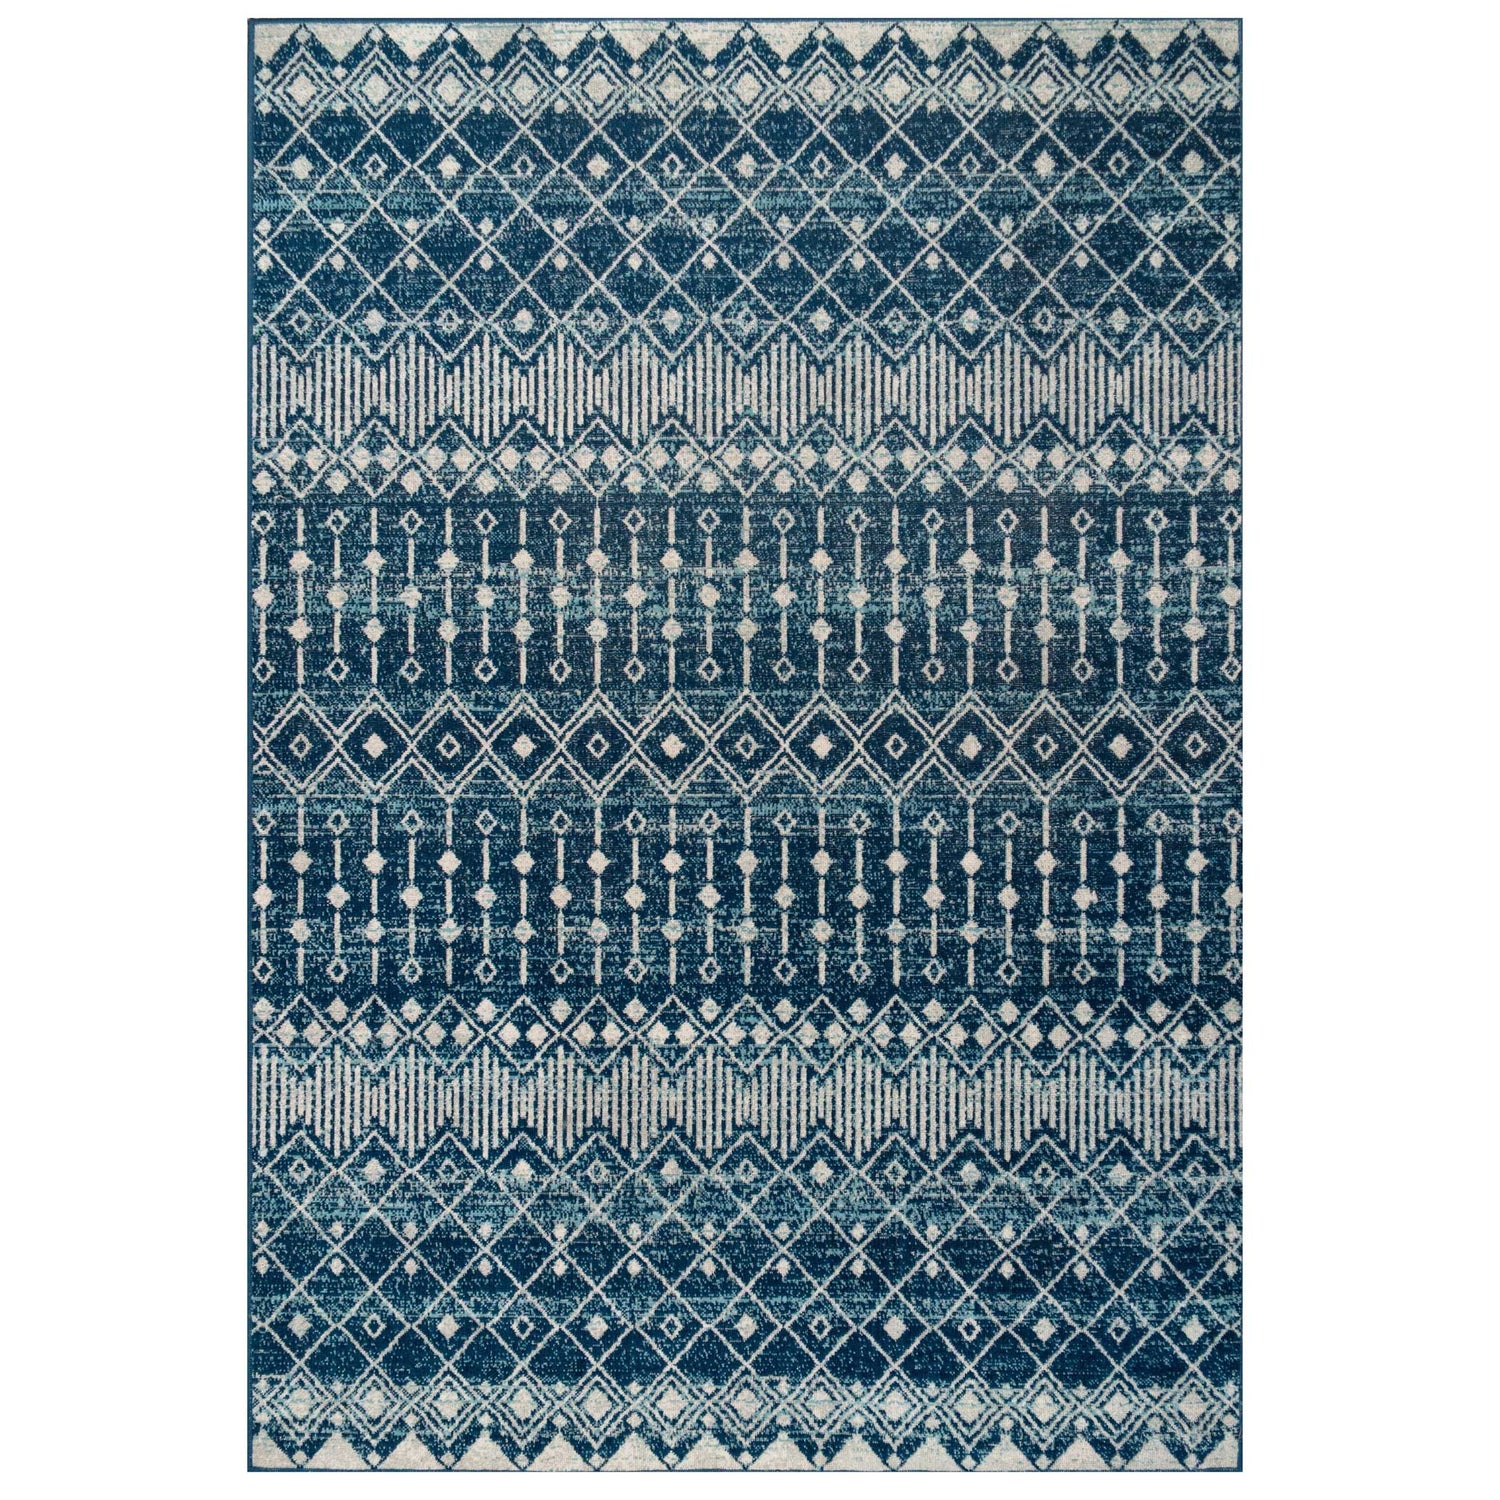 Blue Moroccan Tile Living Room Rug